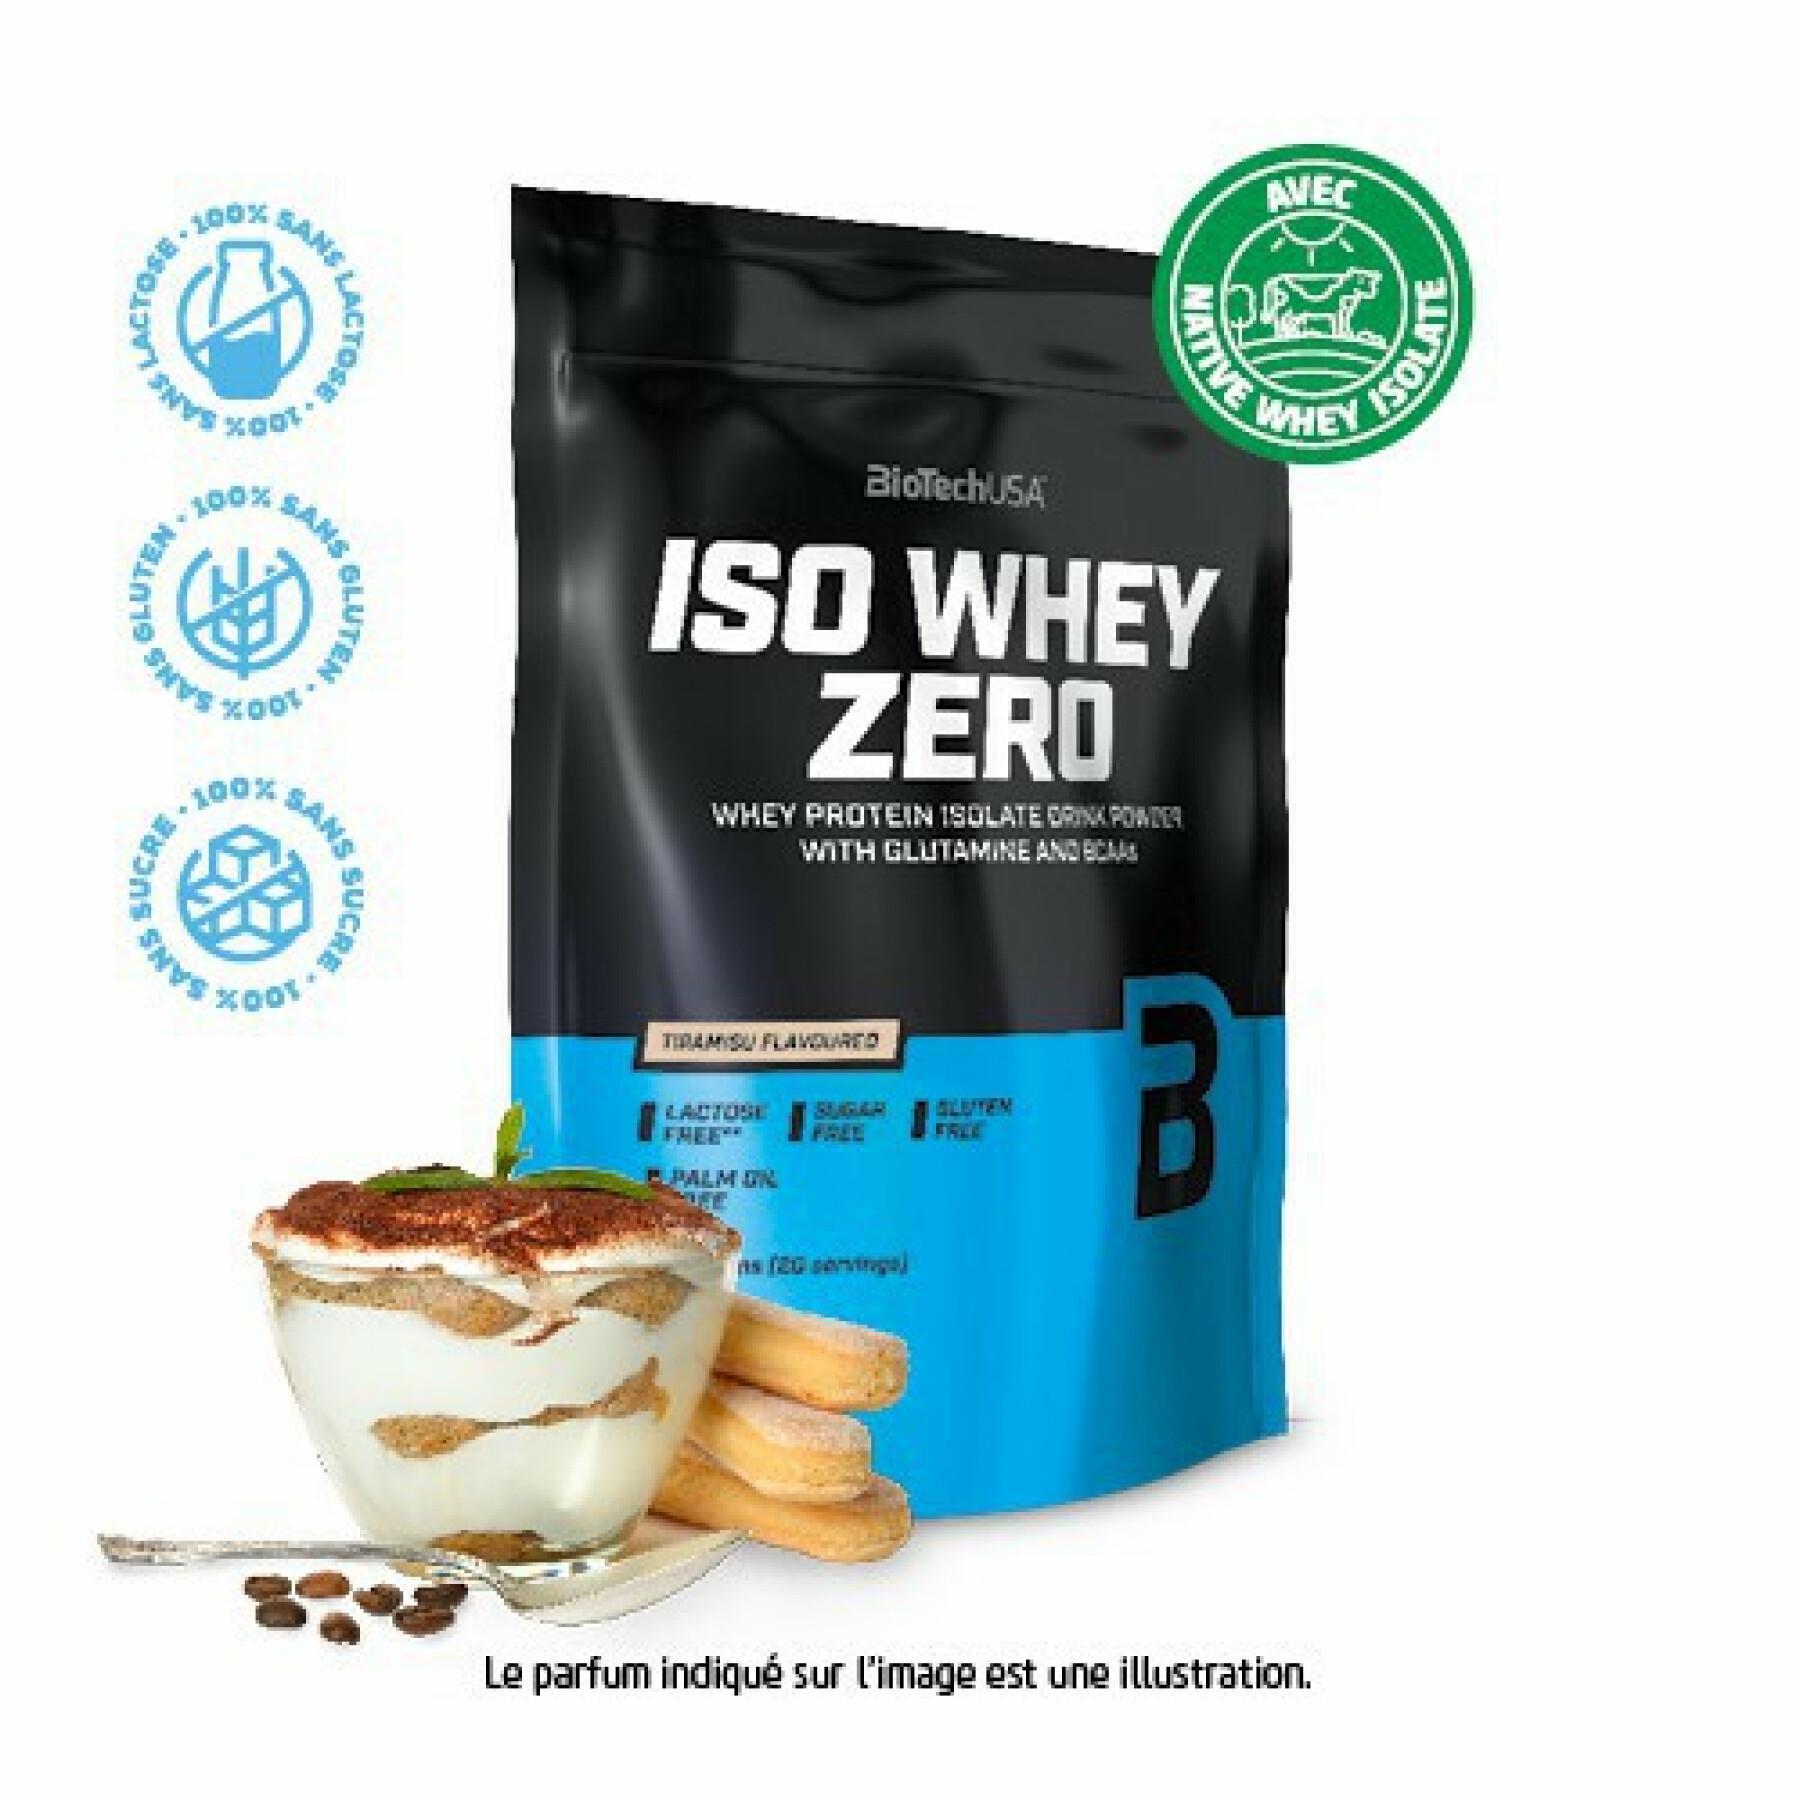 Pak van 10 zakjes proteïne Biotech USA iso whey zero lactose free - Tiramisu - 500g